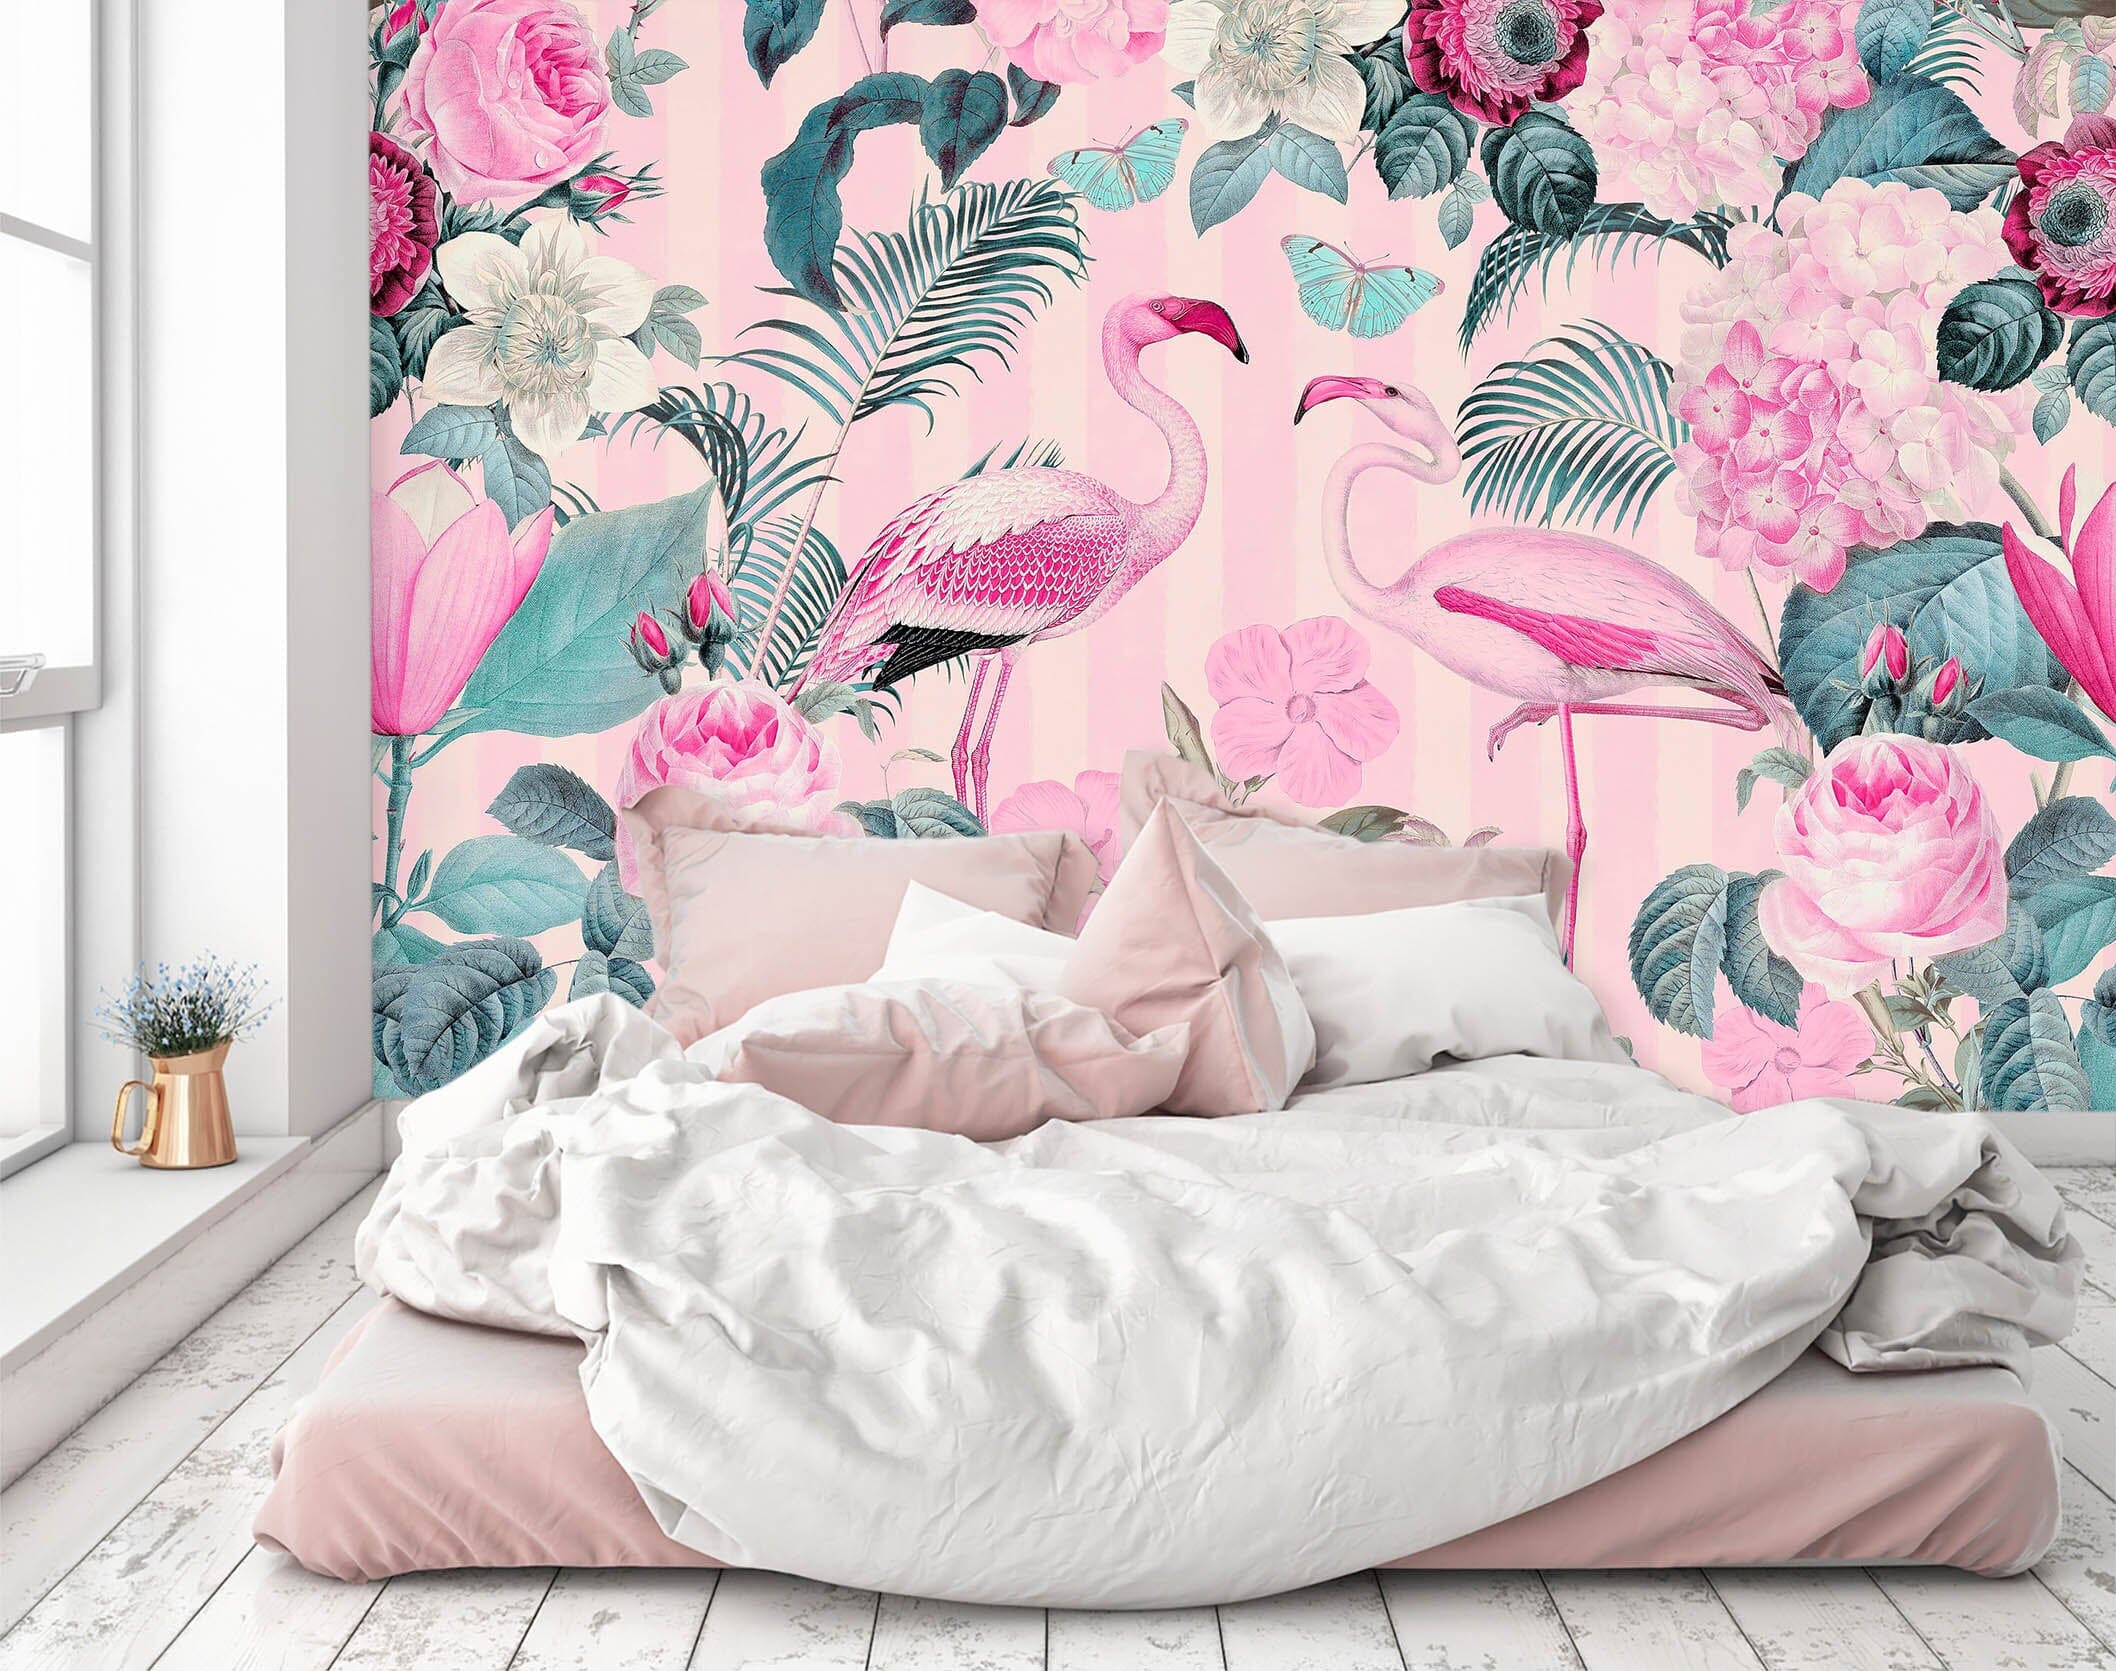 3D Flamingo Forest 1411 Andrea haase Wall Mural Wall Murals Wallpaper AJ Wallpaper 2 